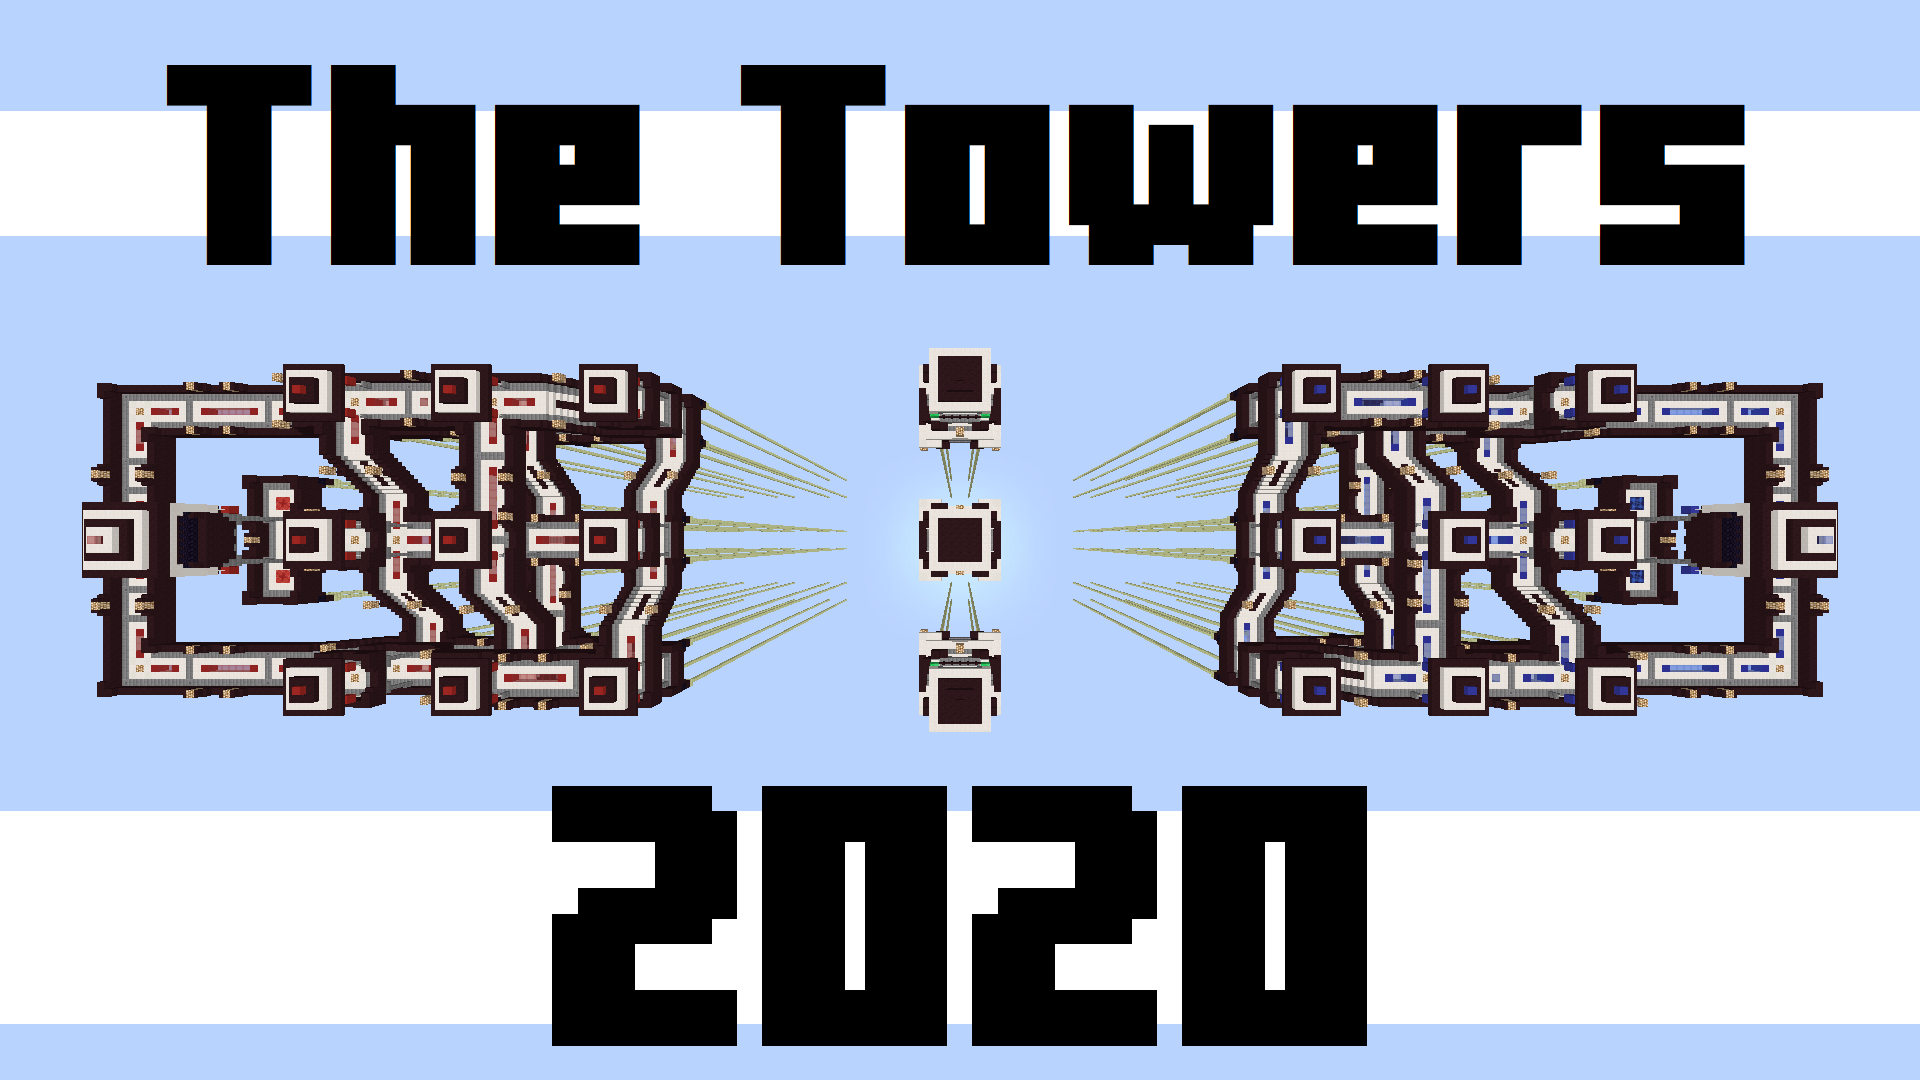 Télécharger The Towers 2020 pour Minecraft 1.16